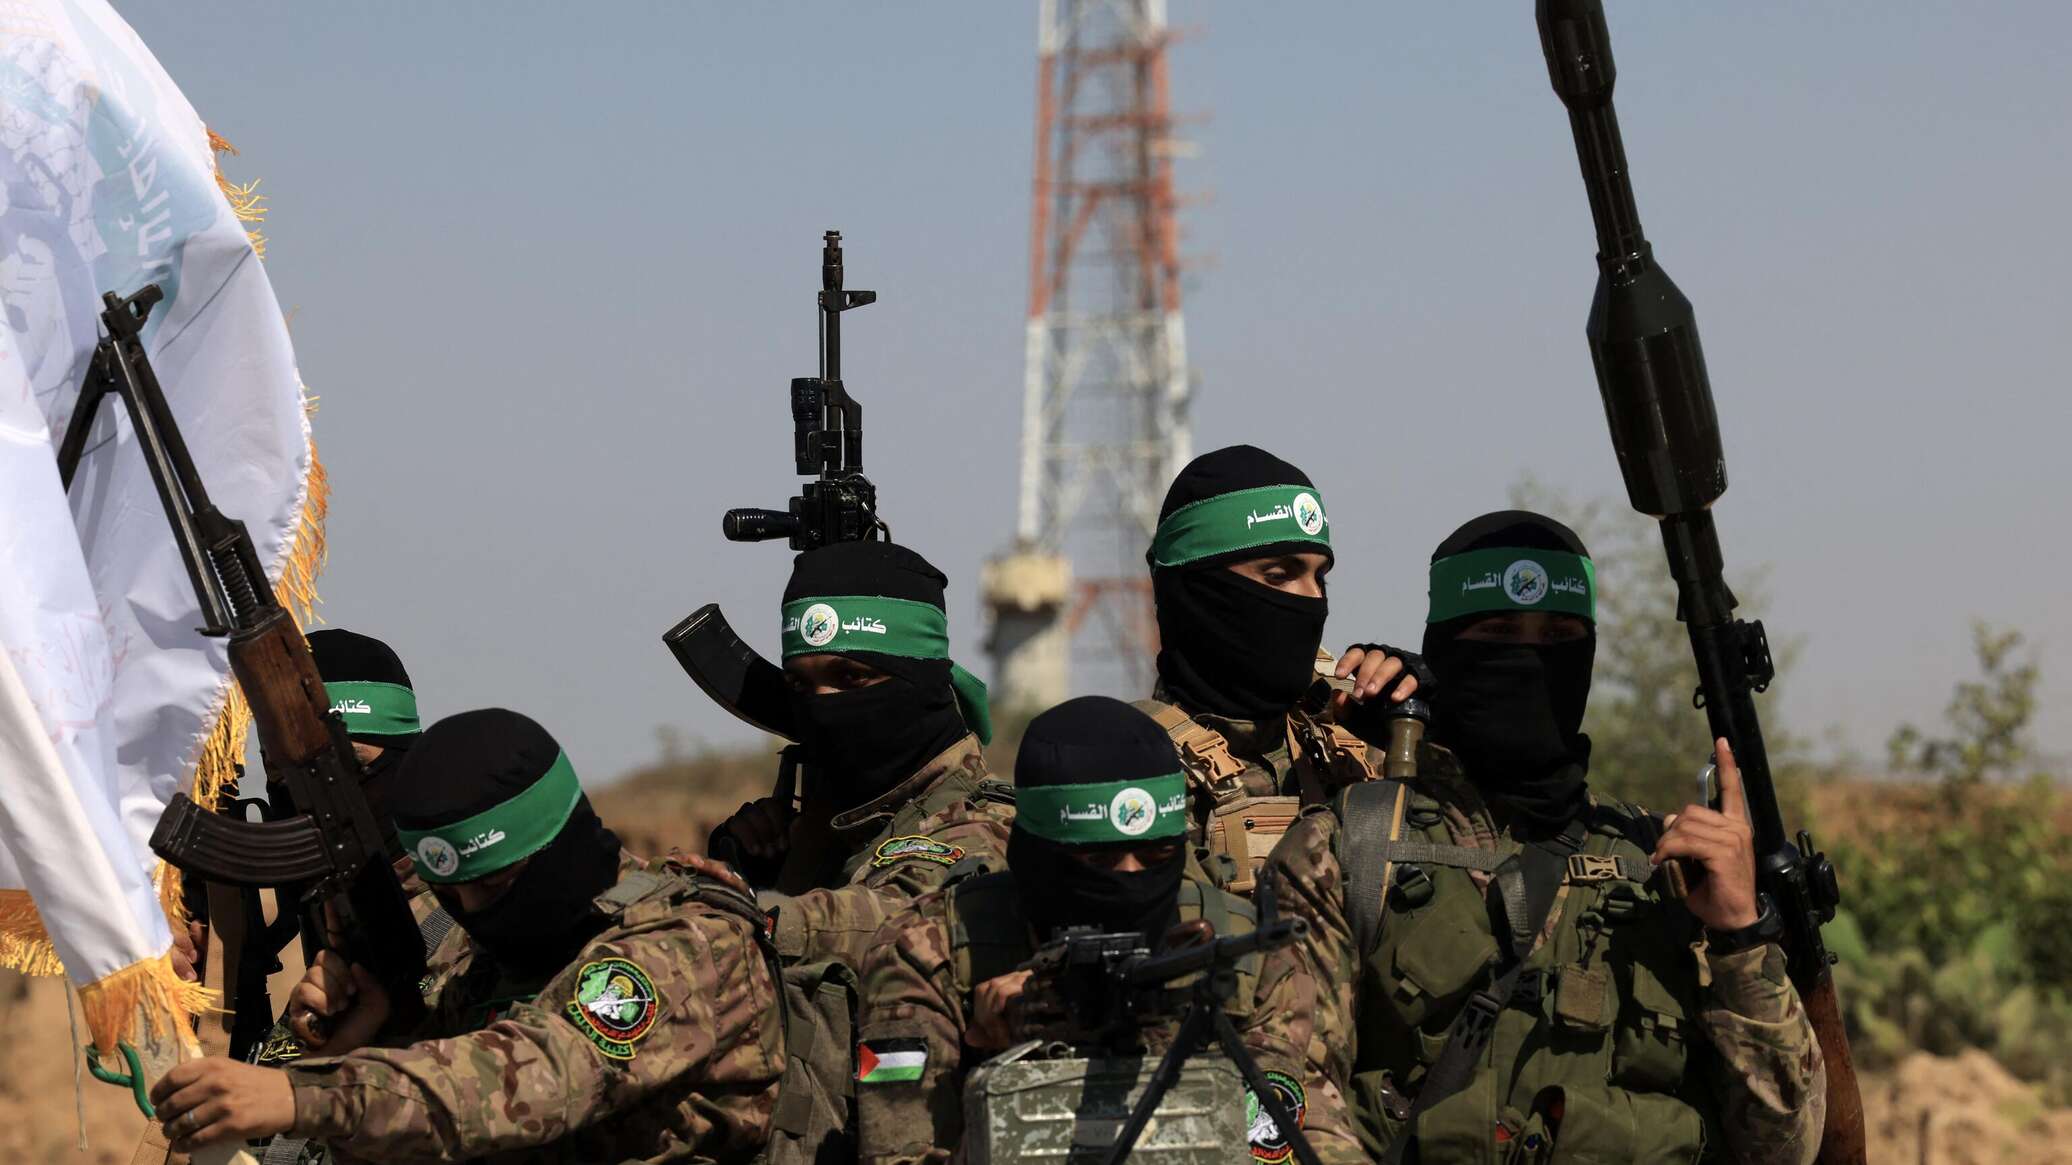 "القسام" تعلن استهداف قوة إسرائيلية جنوب غزة وإيقاع عسكرييها بين قتيل وجريح